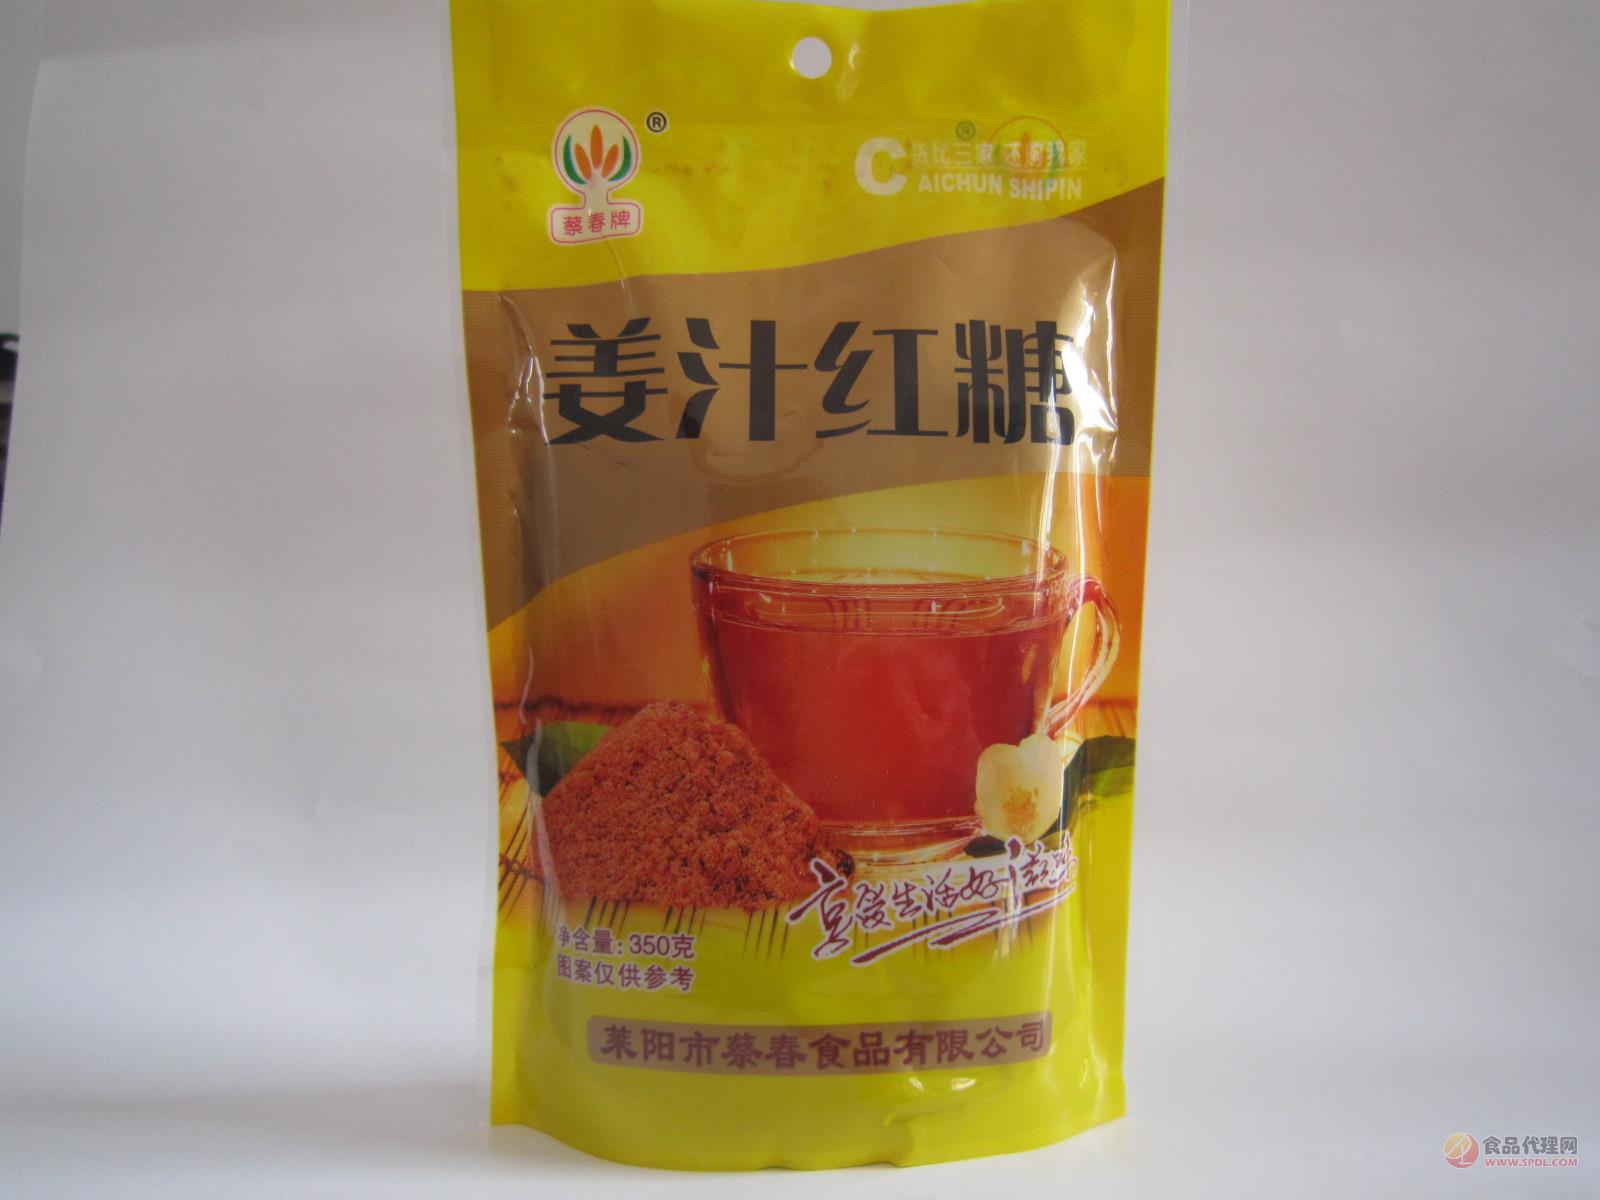 蔡春牌姜汁红糖350g